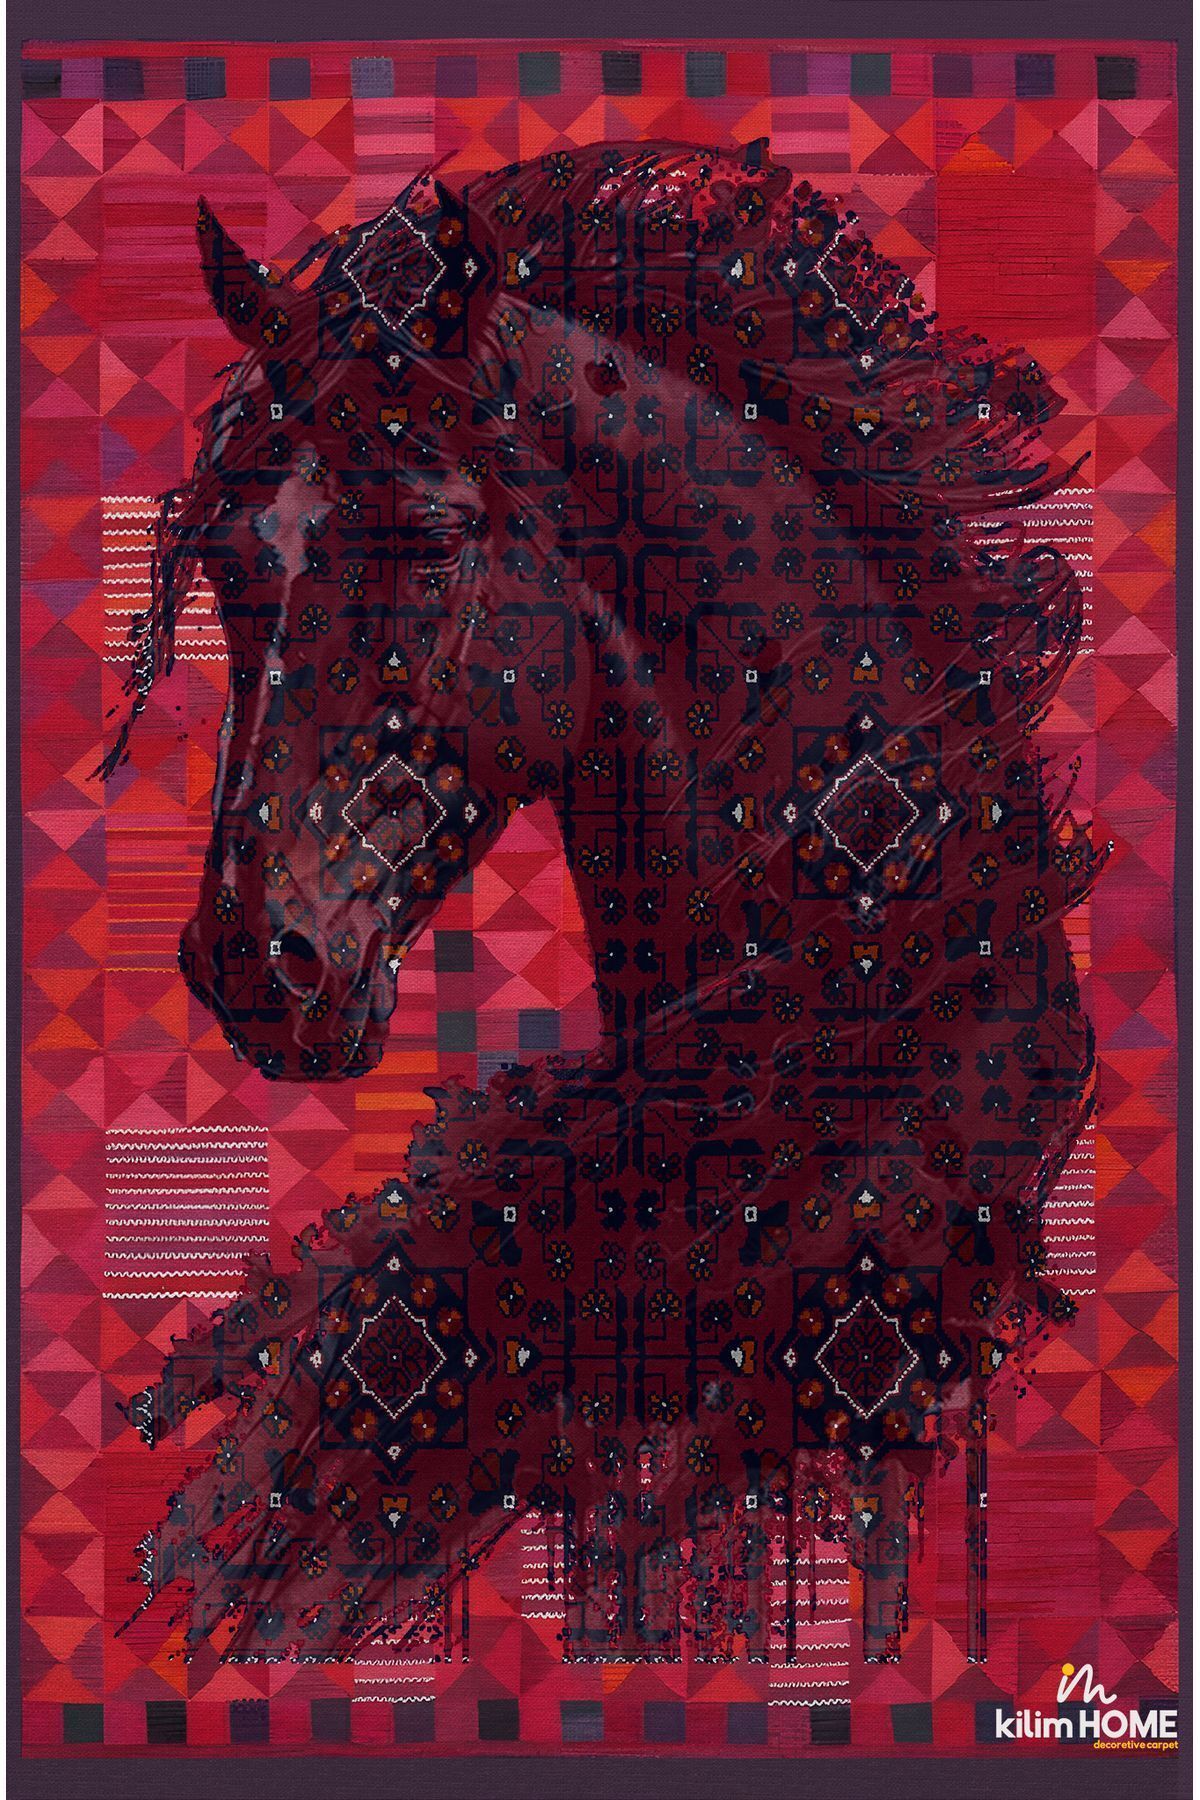 kilim home mars halı etnik anadolu halı üzerine desenlı at dekoratif  Salon Halısı Saçaklı Yıkanabilen Halı